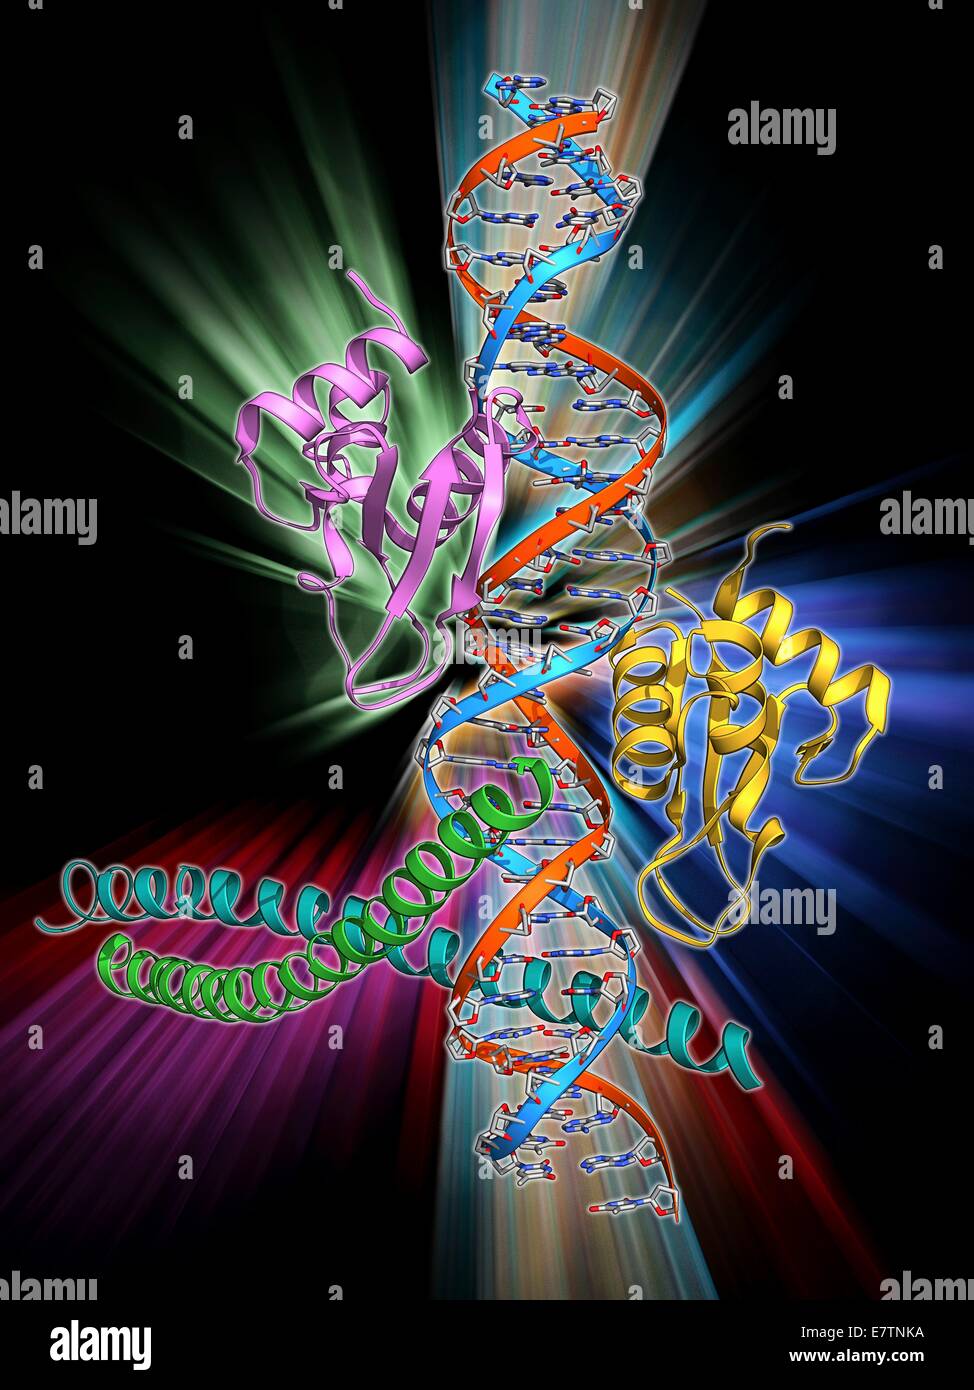 Aktivierung der Transkription des IFN-Beta-Gens. Molekulares Modell des einen Enhanceosome mit der Transkription Faktoren IRF-3, ATF-2 und c-Jun verpflichtet, die Interferon-Beta (IFN-Beta) Enhancer auf einem Strang der DNA (Desoxyribonukleinsäure, rot und blau). Aktivierung Stockfoto